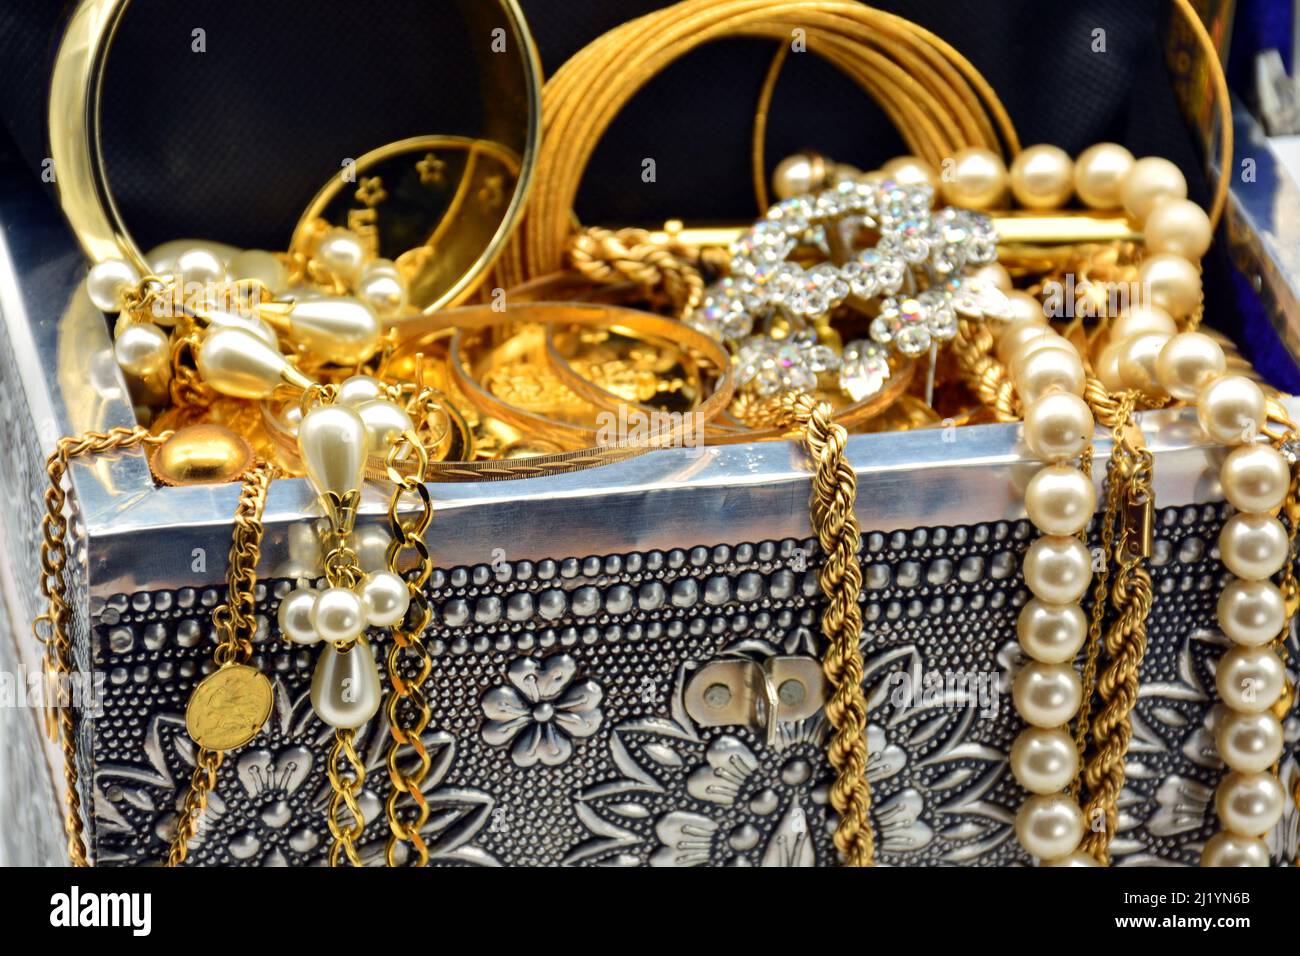 Un tesoro, cofre lleno de joyas, perlas, y oro Stock Photo